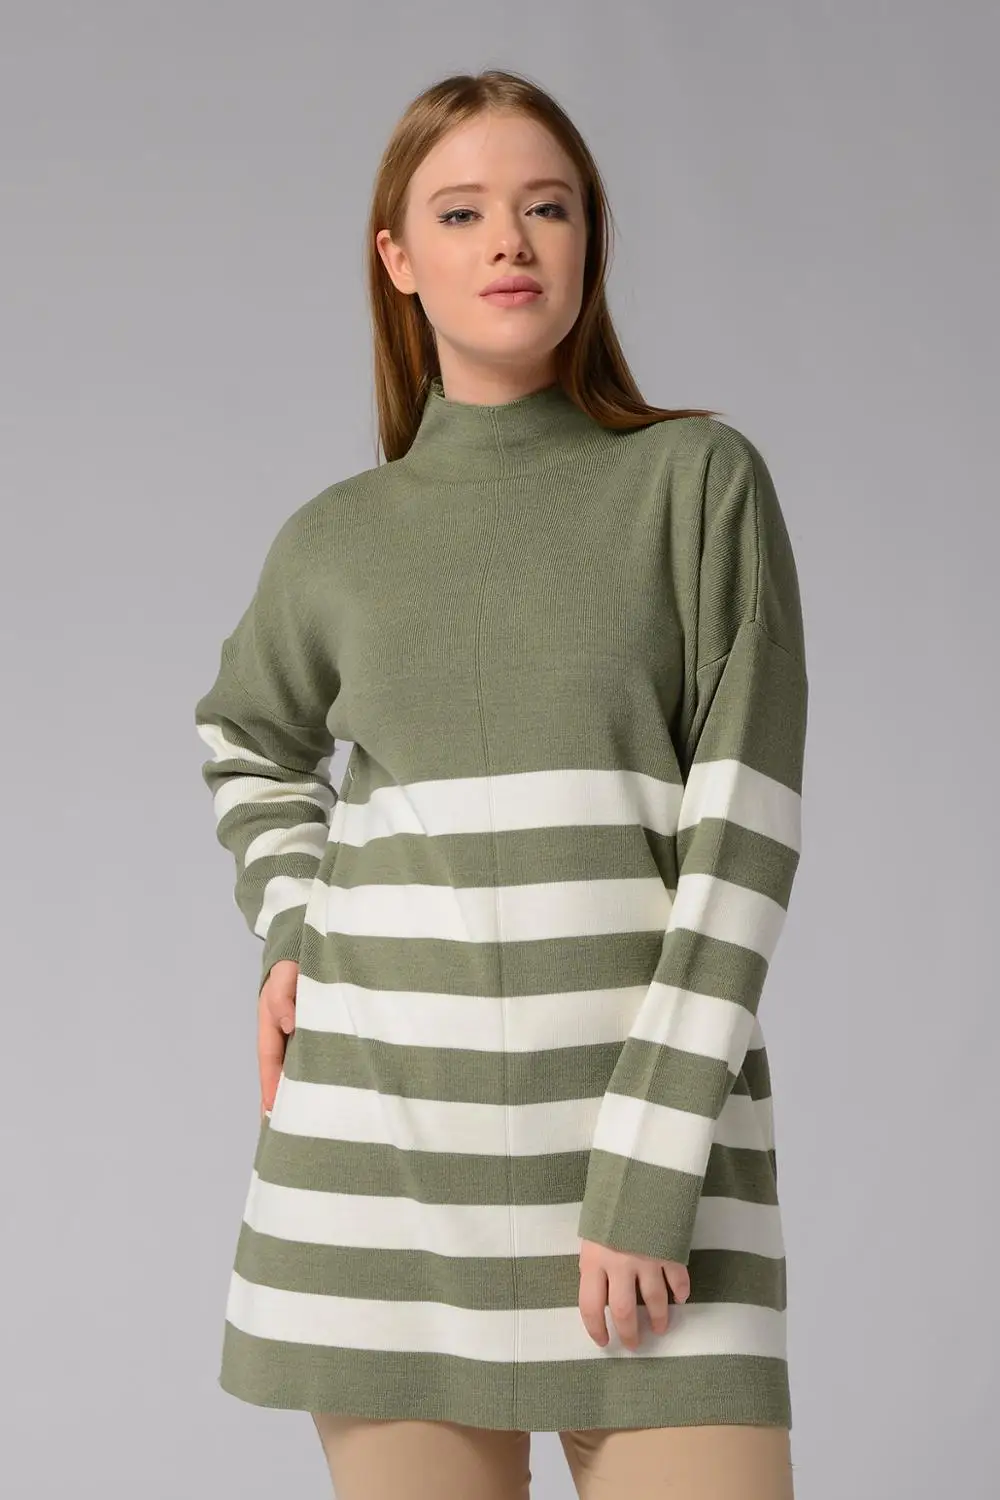 

Nefise Fashion 2020 Women Knitted Mock Neck Stripped Long Stylish Sweater Tunic Winter Autumn Khaki